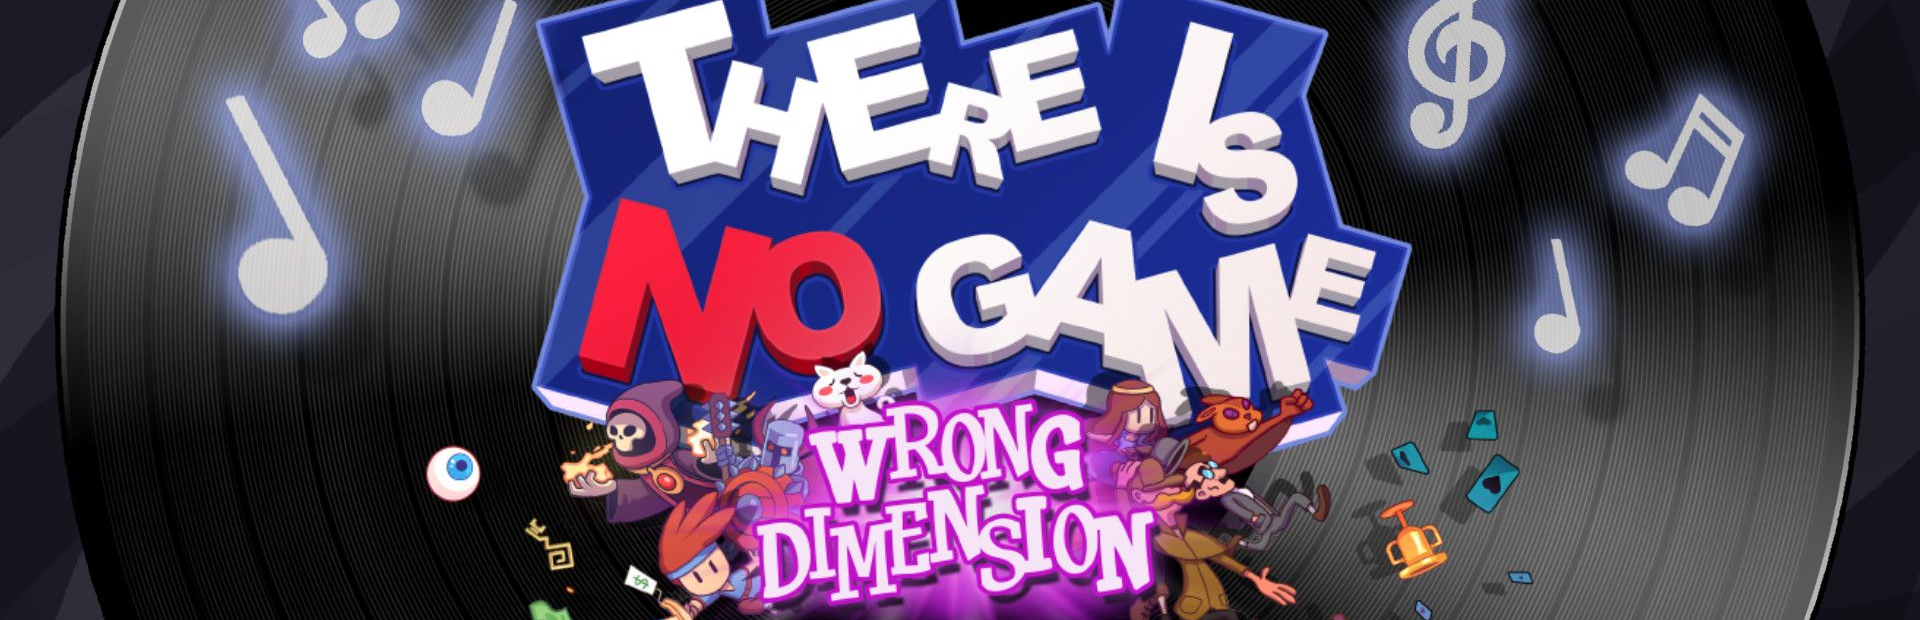 دانلود بازی There Is No Game: Wrong Dimension برای پی سی | گیمباتو